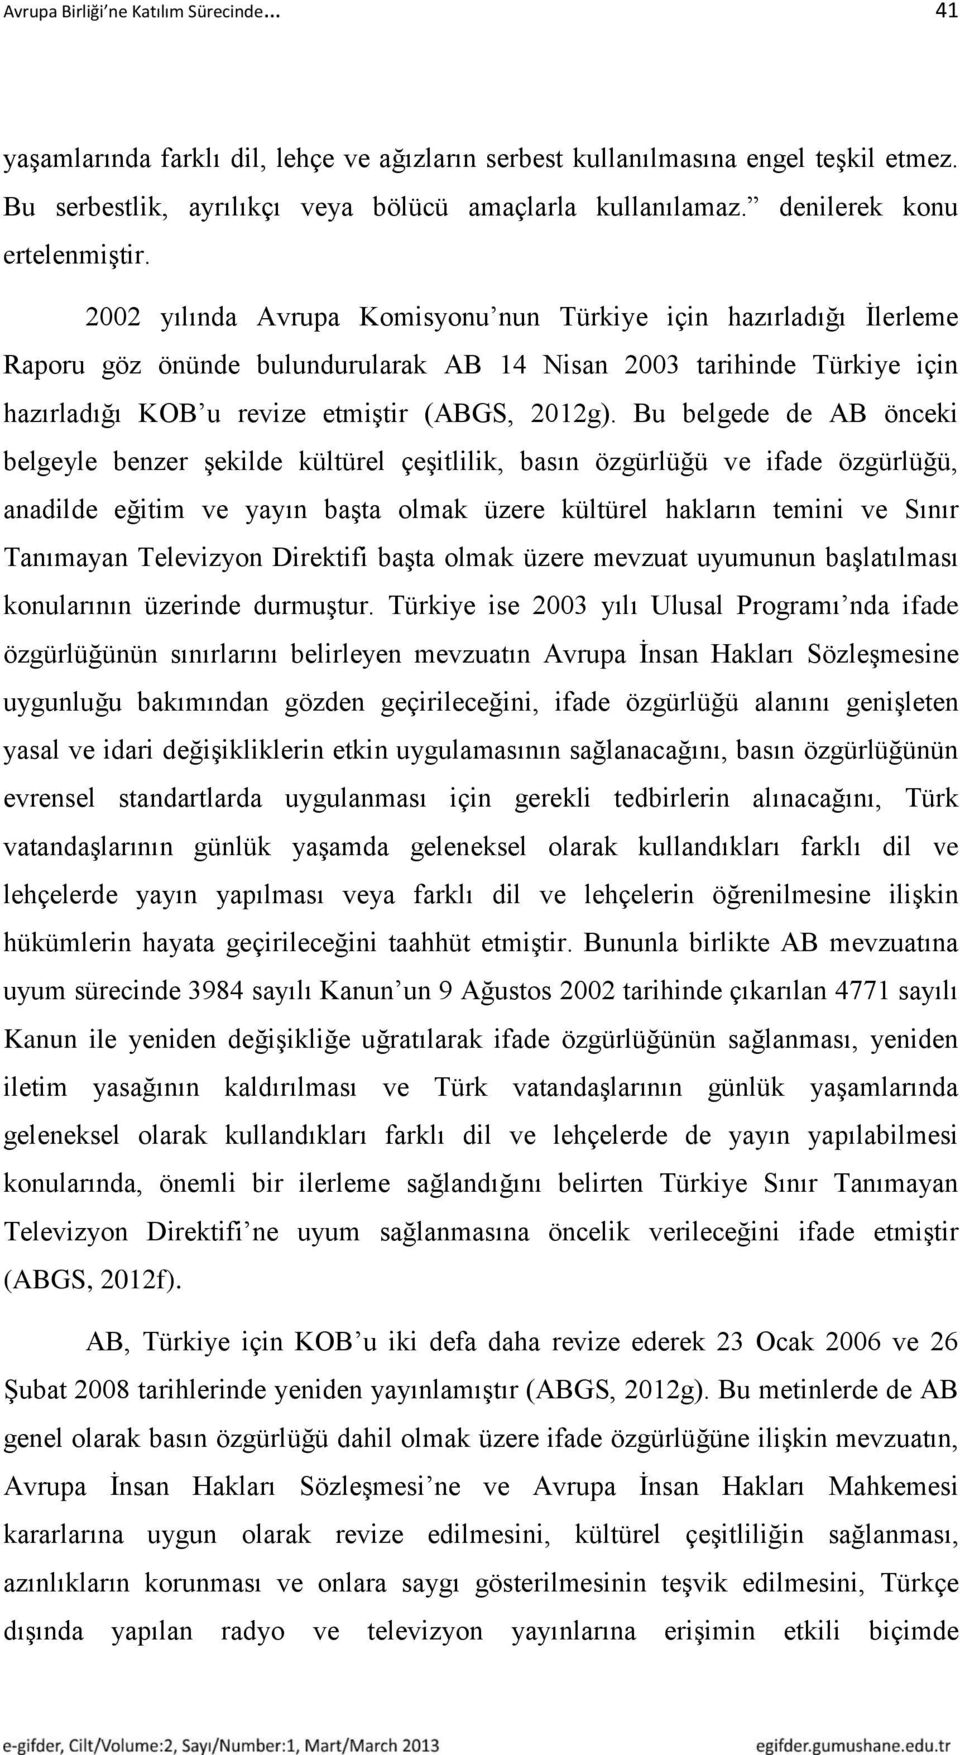 2002 yılında Avrupa Komisyonu nun Türkiye için hazırladığı İlerleme Raporu göz önünde bulundurularak AB 14 Nisan 2003 tarihinde Türkiye için hazırladığı KOB u revize etmiştir (ABGS, 2012g).